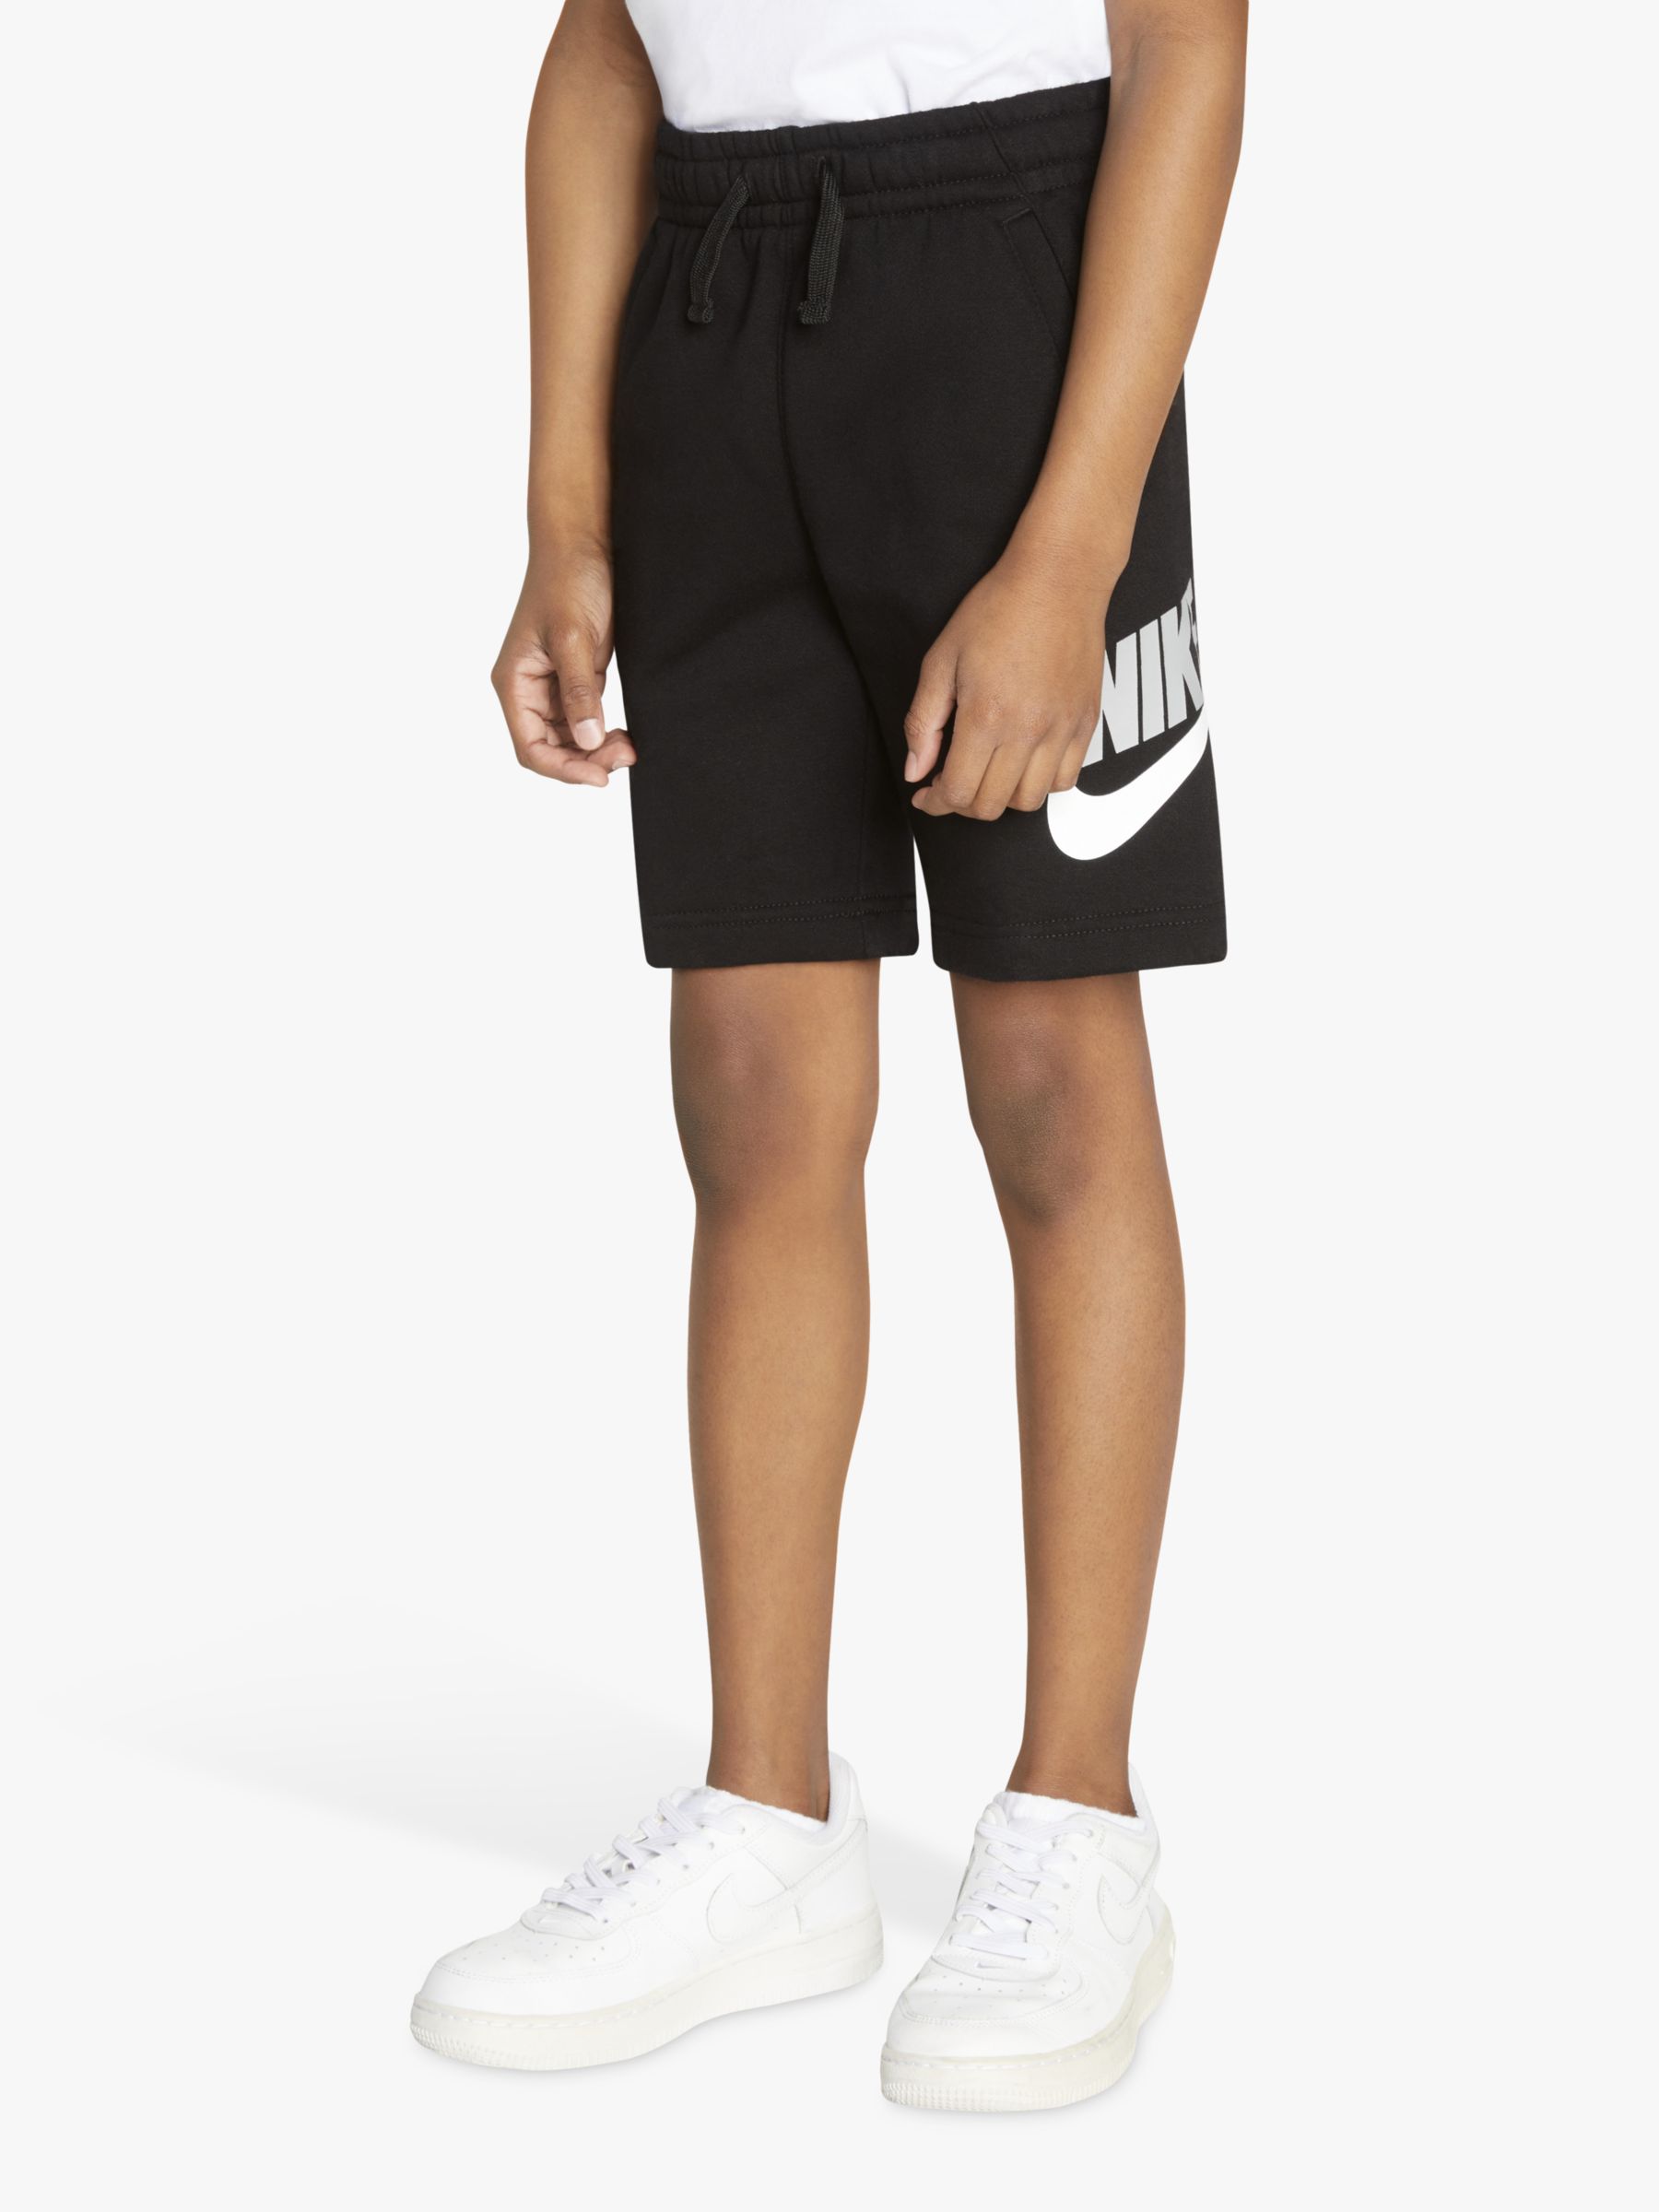 Nike Kids' Big Logo Jersey Shorts